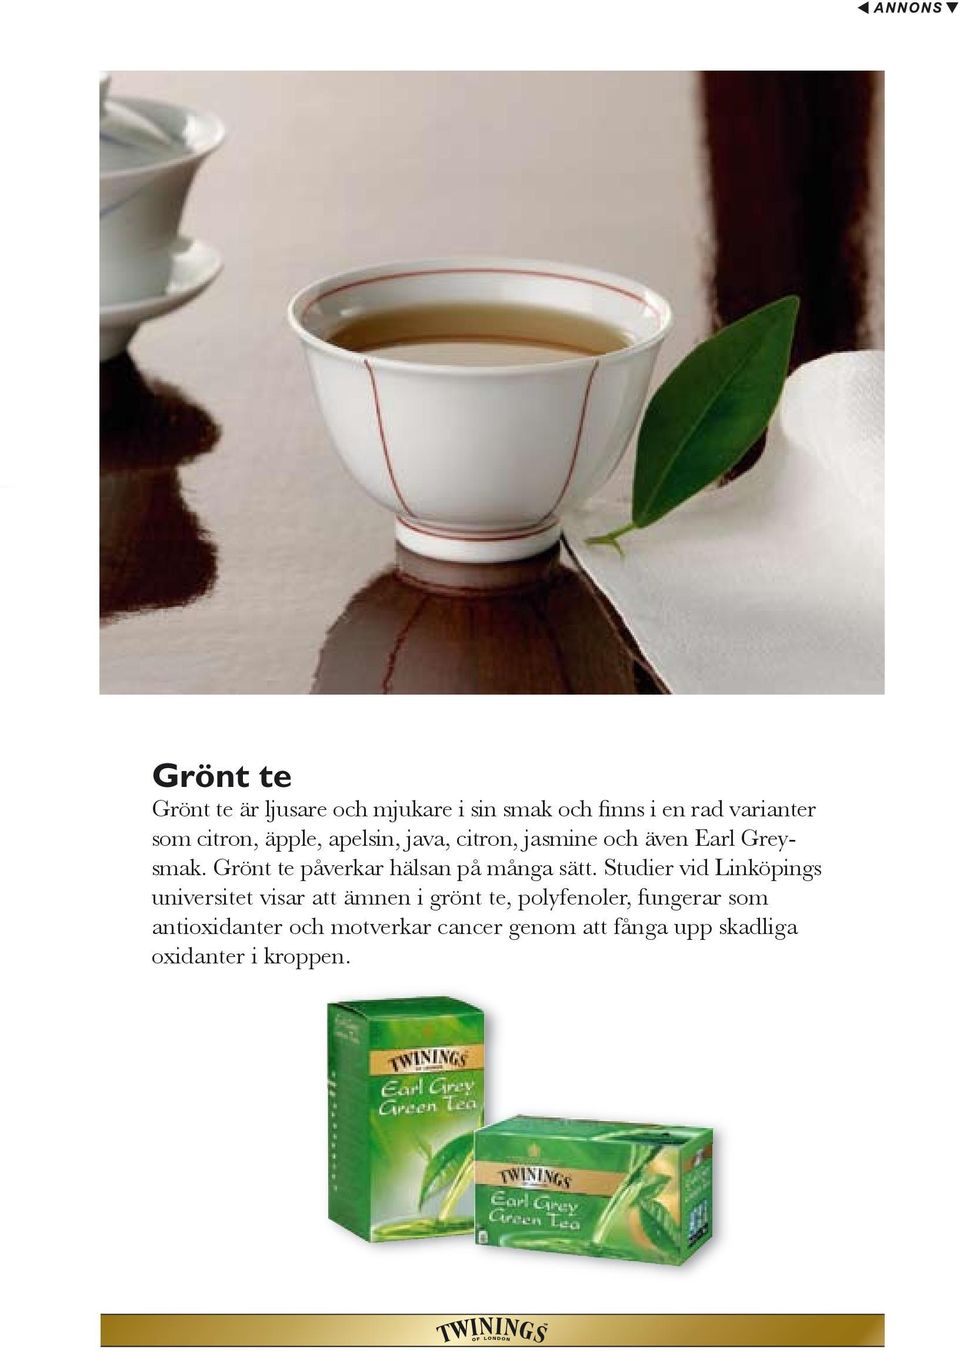 Grönt te påverkar hälsan på många sätt.